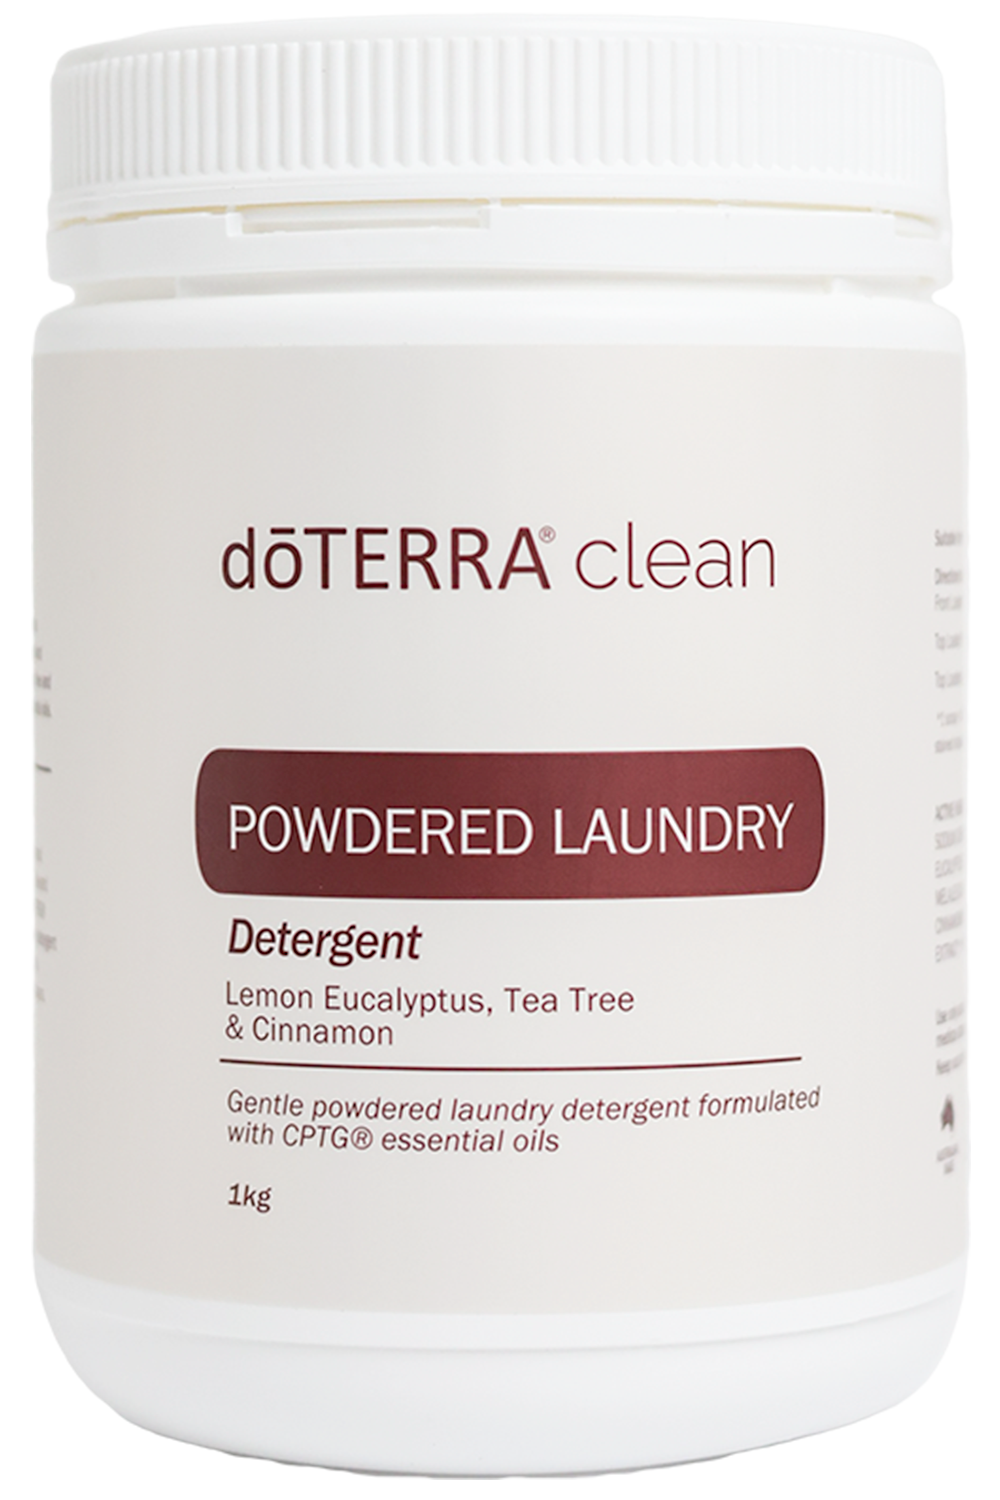 dōTERRA® clean Powdered Laundry Detergent